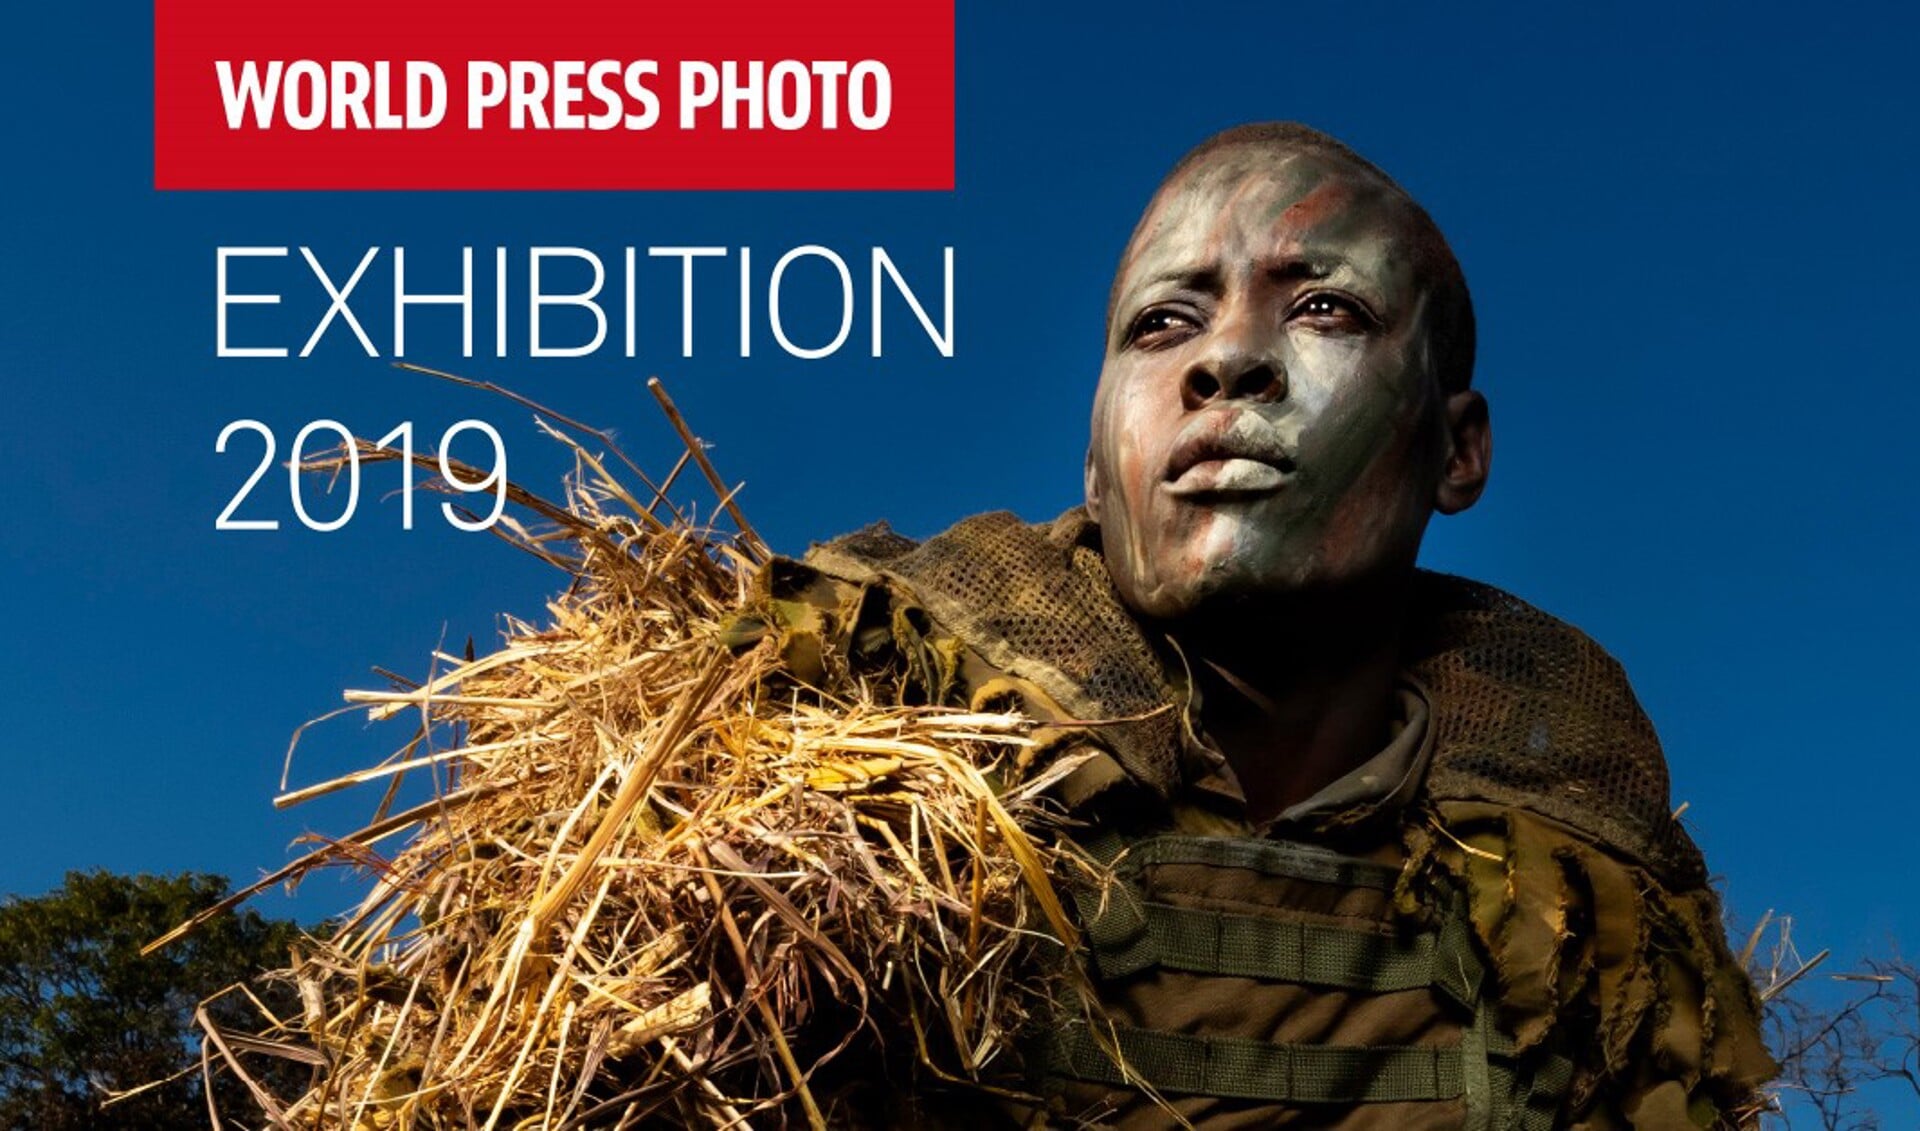 World Press Photo Exhibition 2019 in de Grote Kerk Alkmaar. 